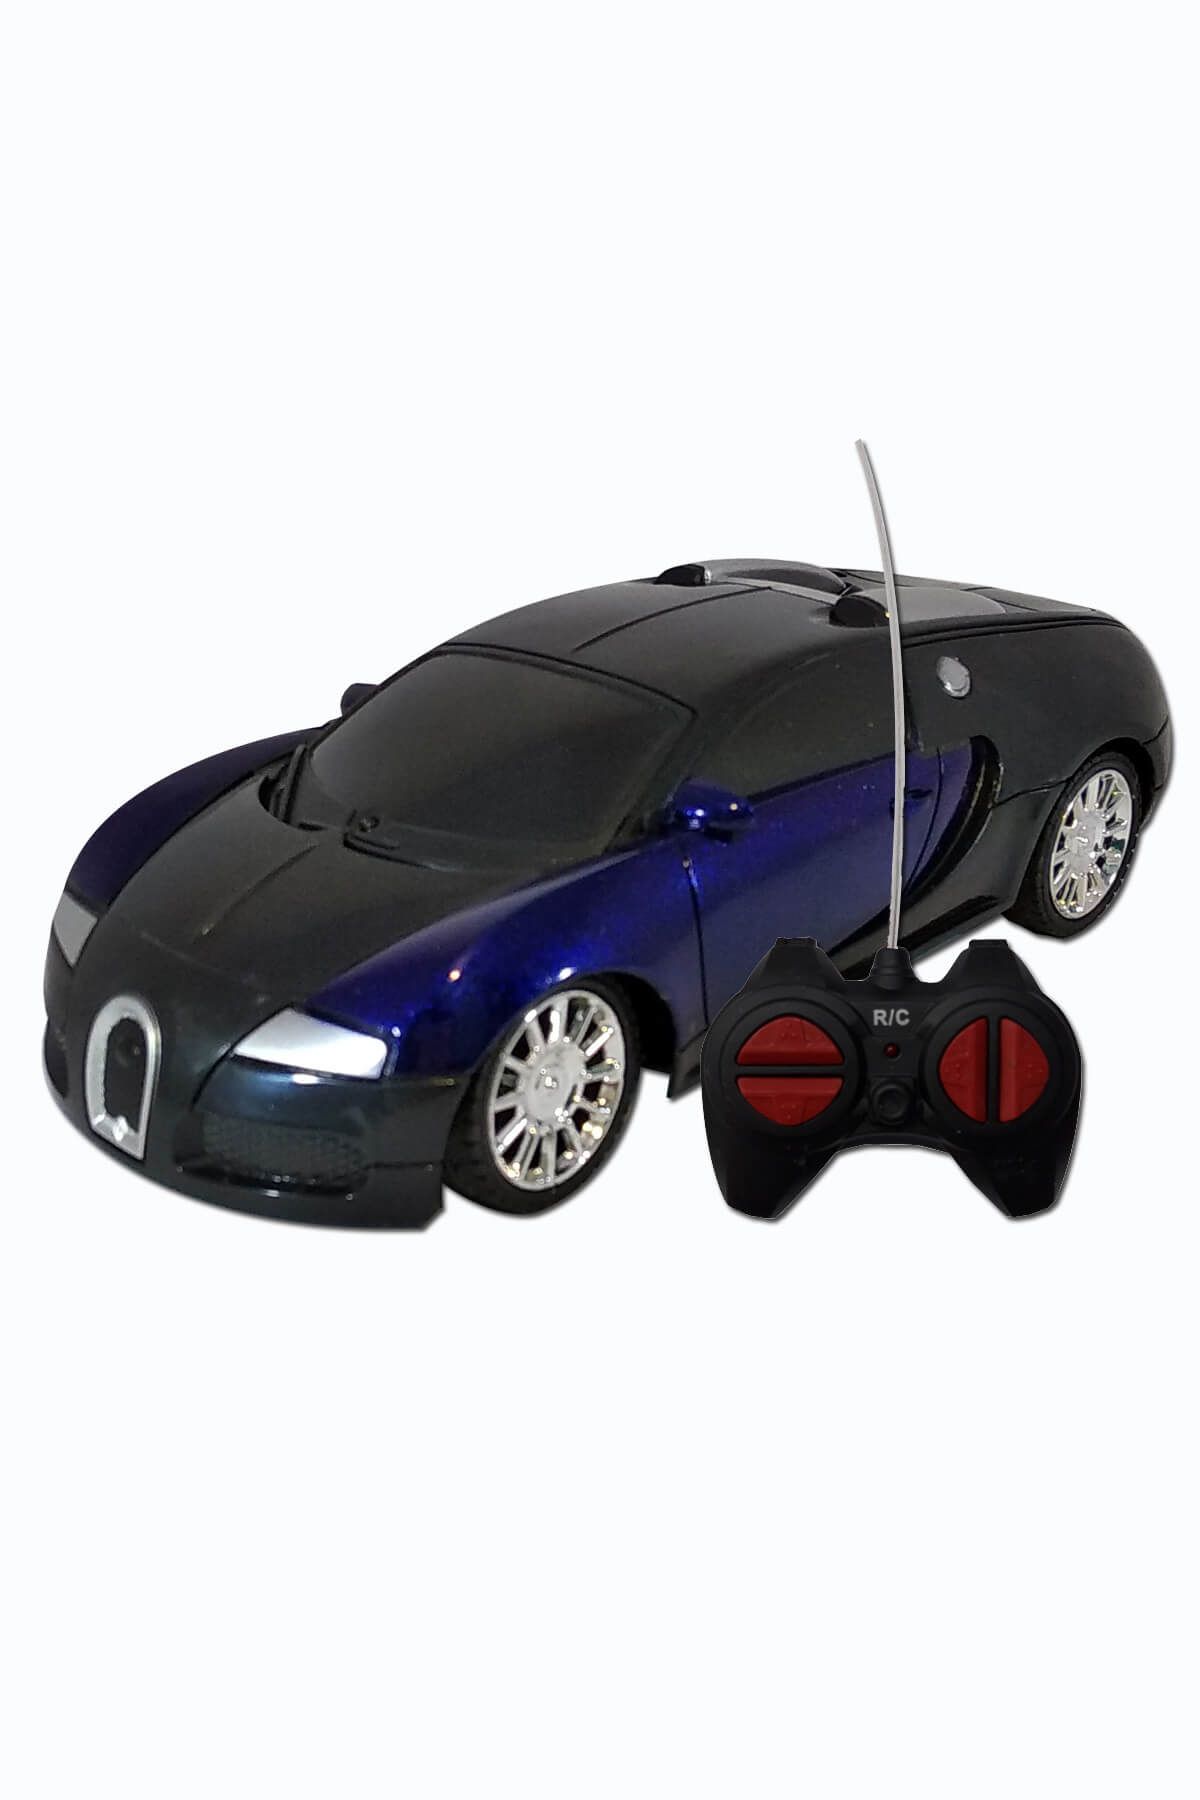 Erdem Uzaktan Kumandalı Araba Aj09-1 Bugatti Siyah Mavi /